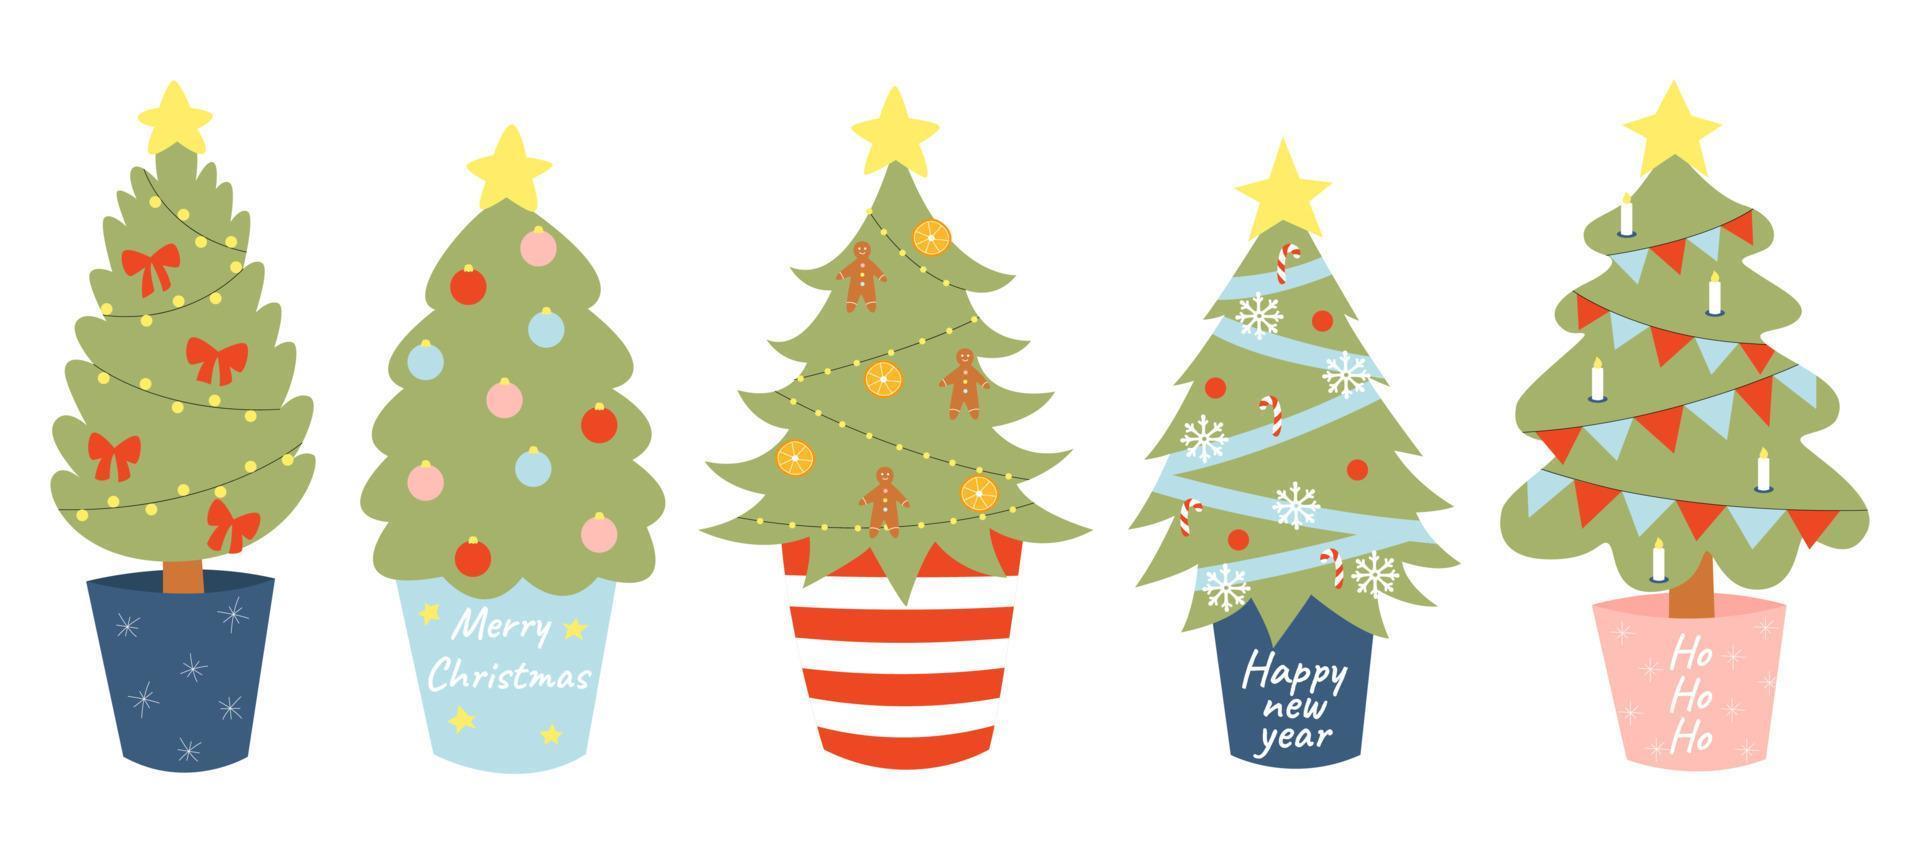 coloque el árbol de navidad en una olla, año nuevo ecológico, reutilización, cero residuos, vacaciones ecológicas. ilustración vectorial en estilo de dibujos animados aislado. vector